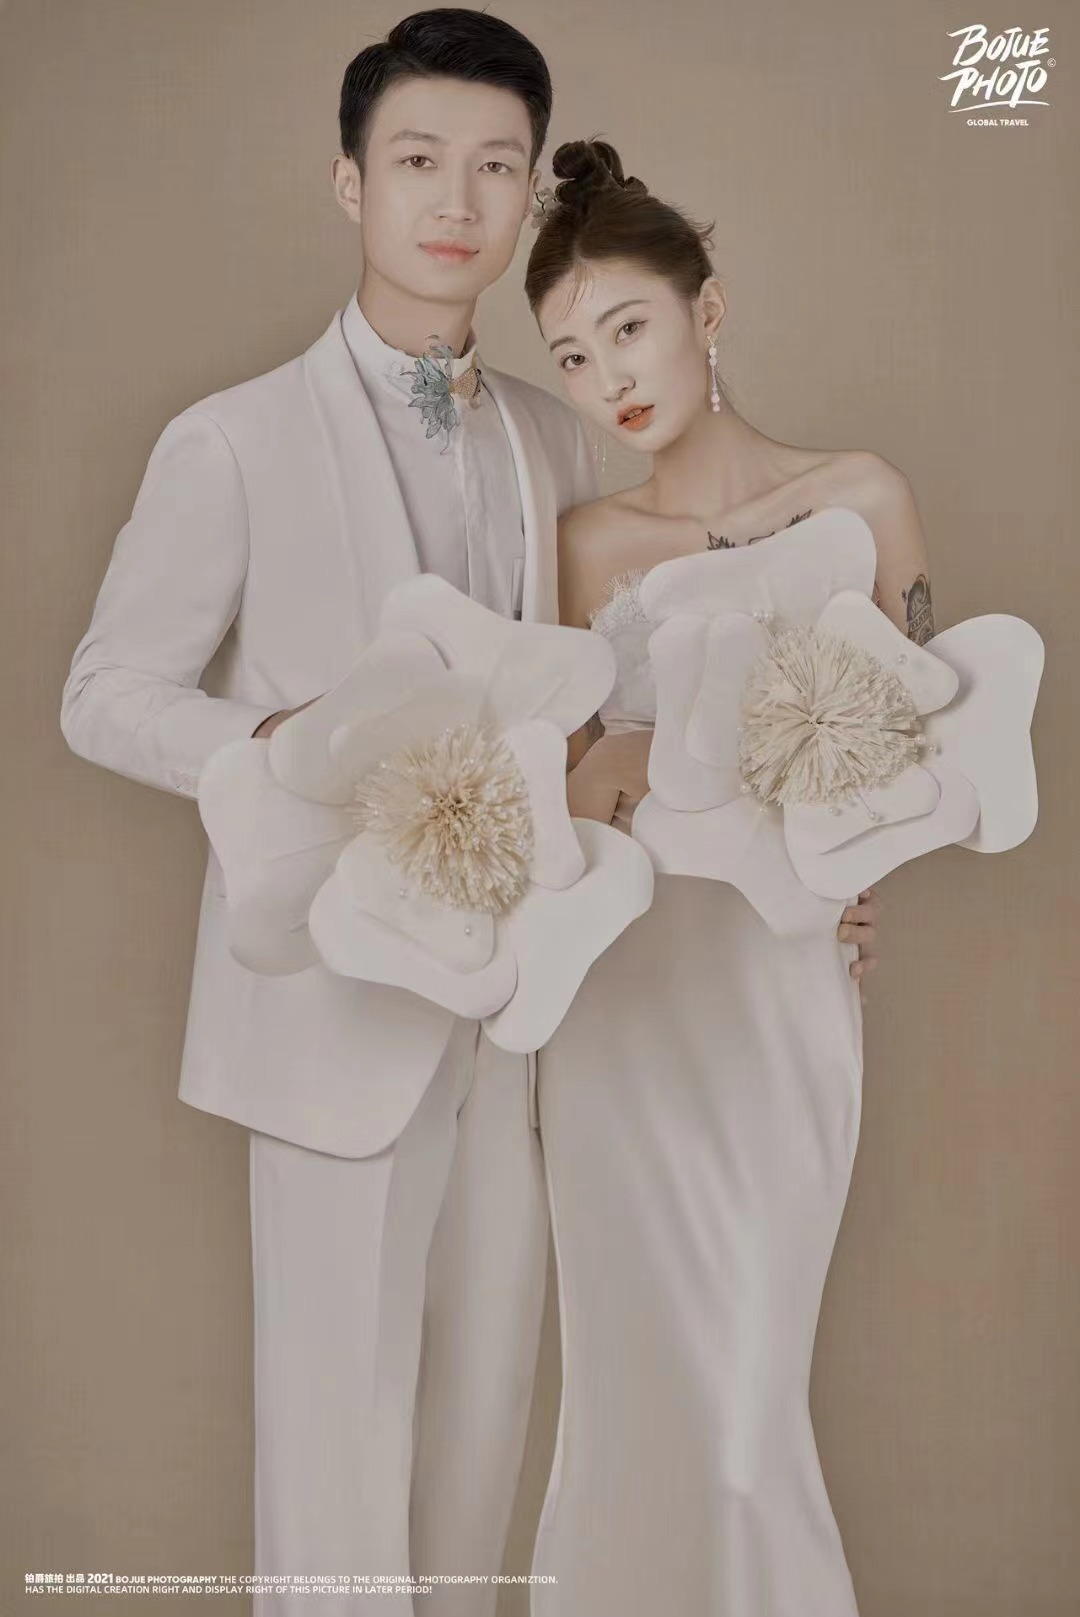 分享我在铂爵旅拍北京店拍的婚纱照